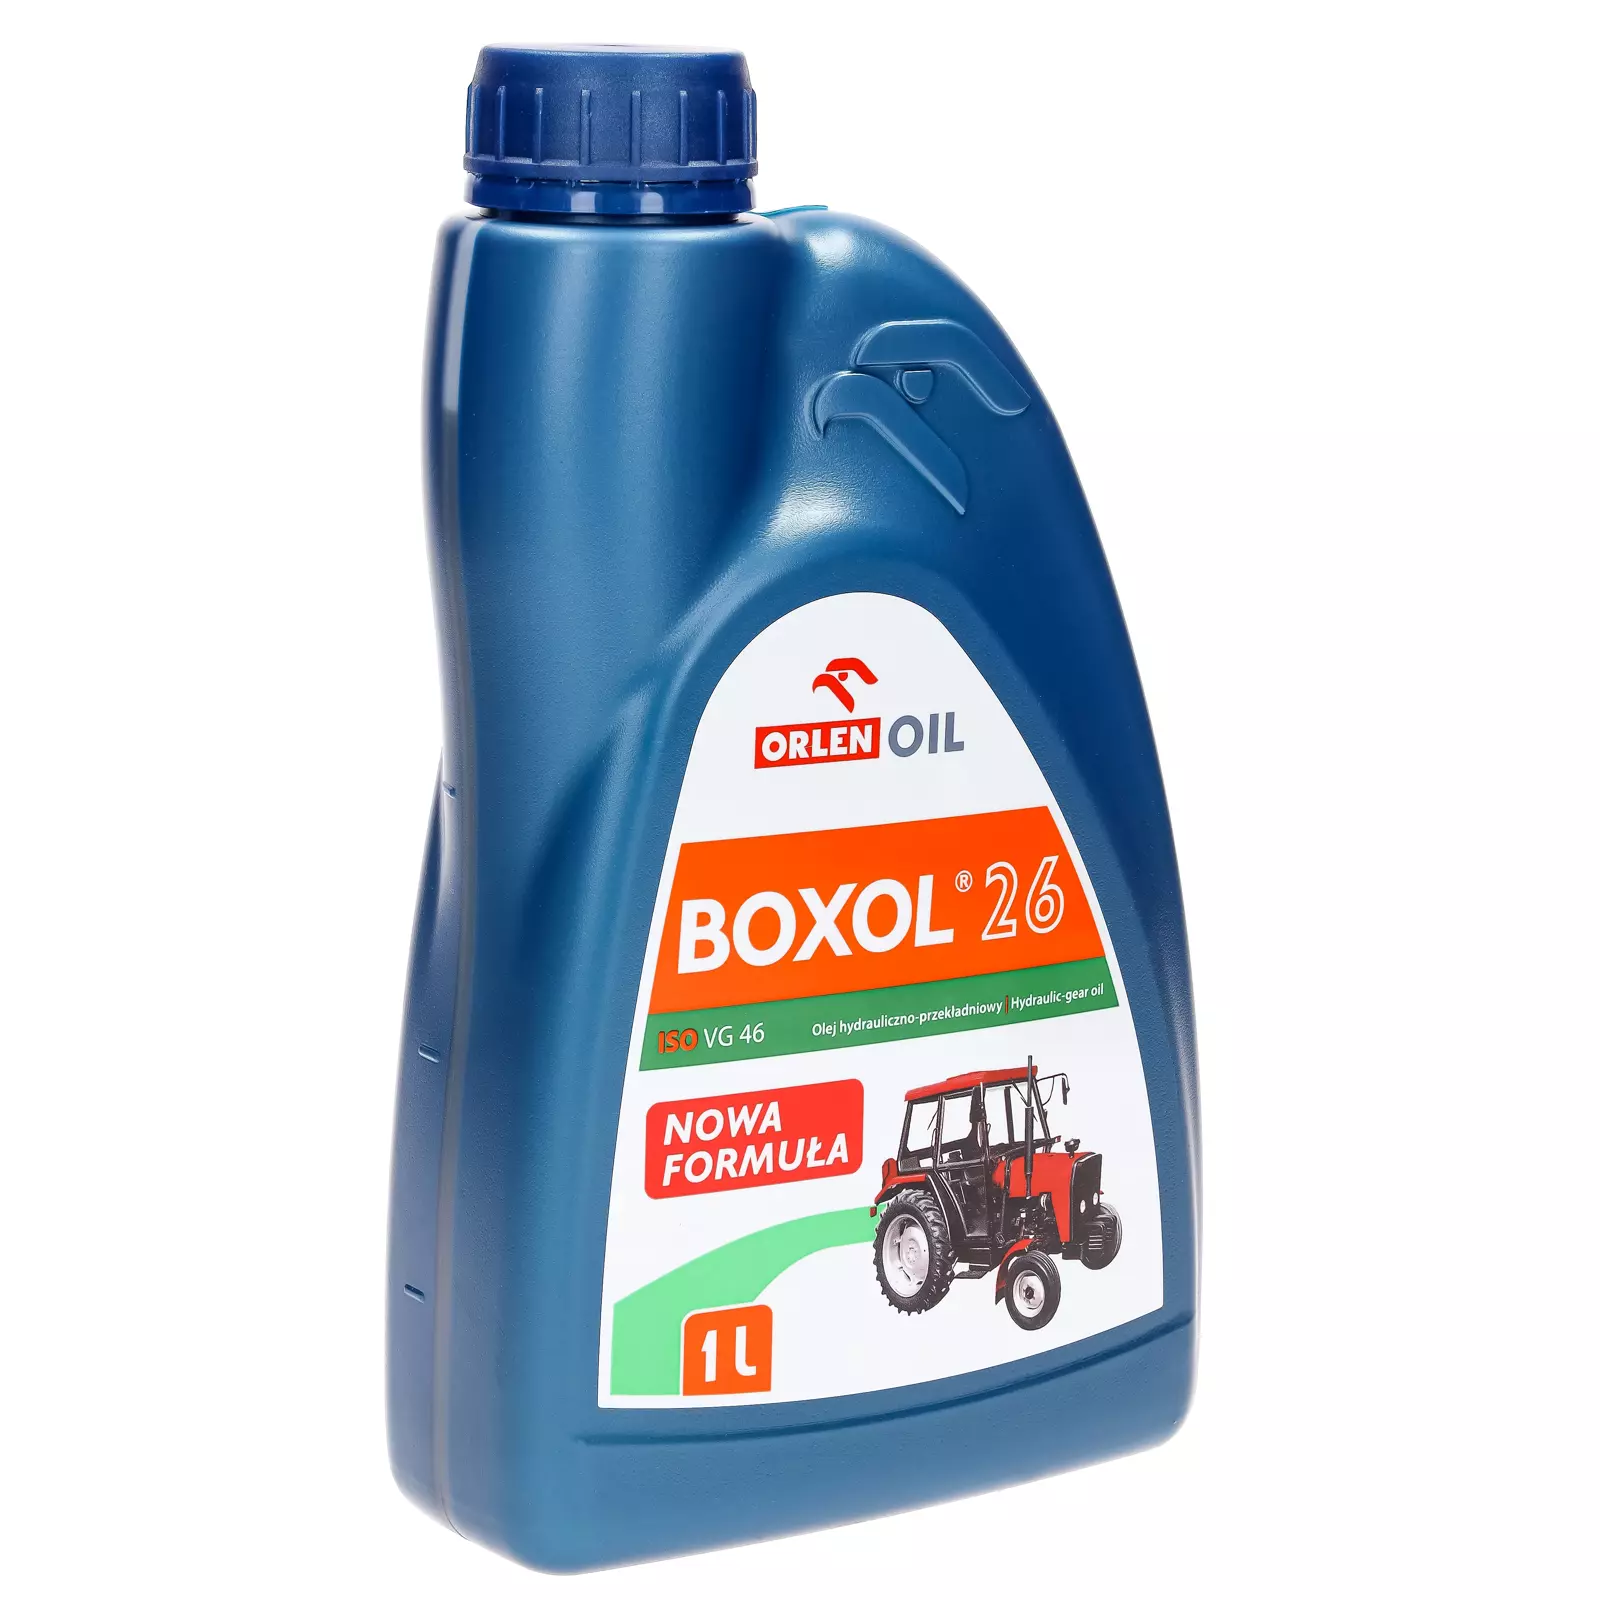 BOXOL 26 1л гидравлическое и трансмиссионное масло